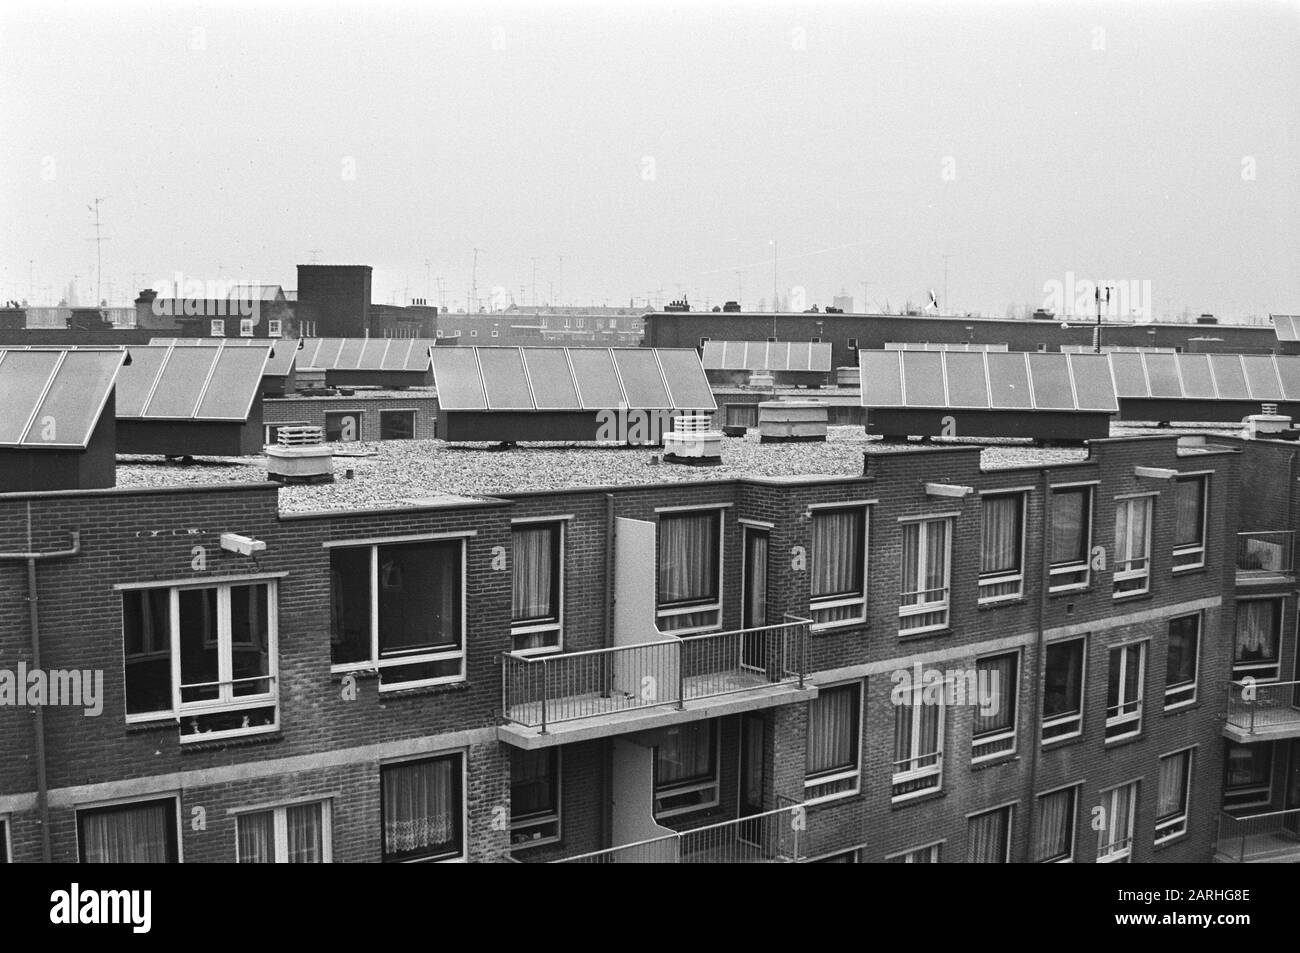 Chaudières solaires sur les toits de la nouvelle construction à Formosastraat comme essai et équipées de 34 chaudières les maisons d'eau chaude Date: 24 février 1982 lieu: Amsterdam, Noord-Holland mots clés: Nouveau BÂTIMENT, chauffe-eau solaires Banque D'Images